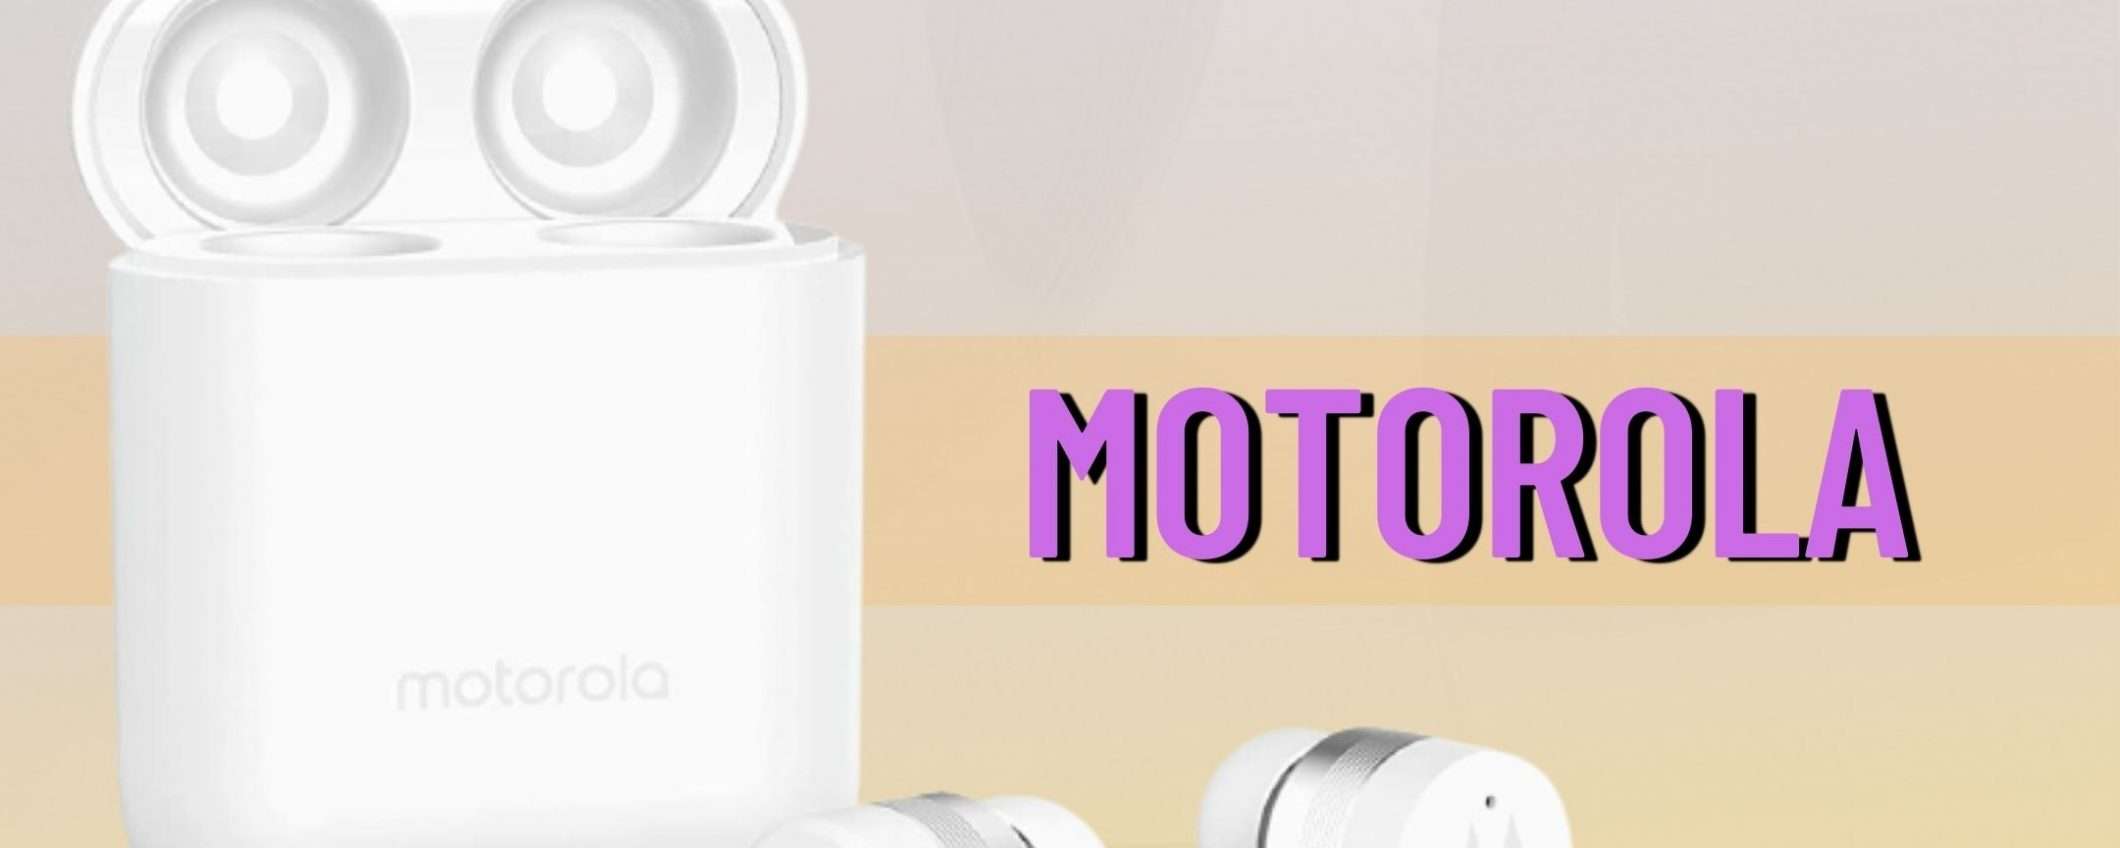 Motorola VerveBuds 100: come non acquistarle a questo prezzo